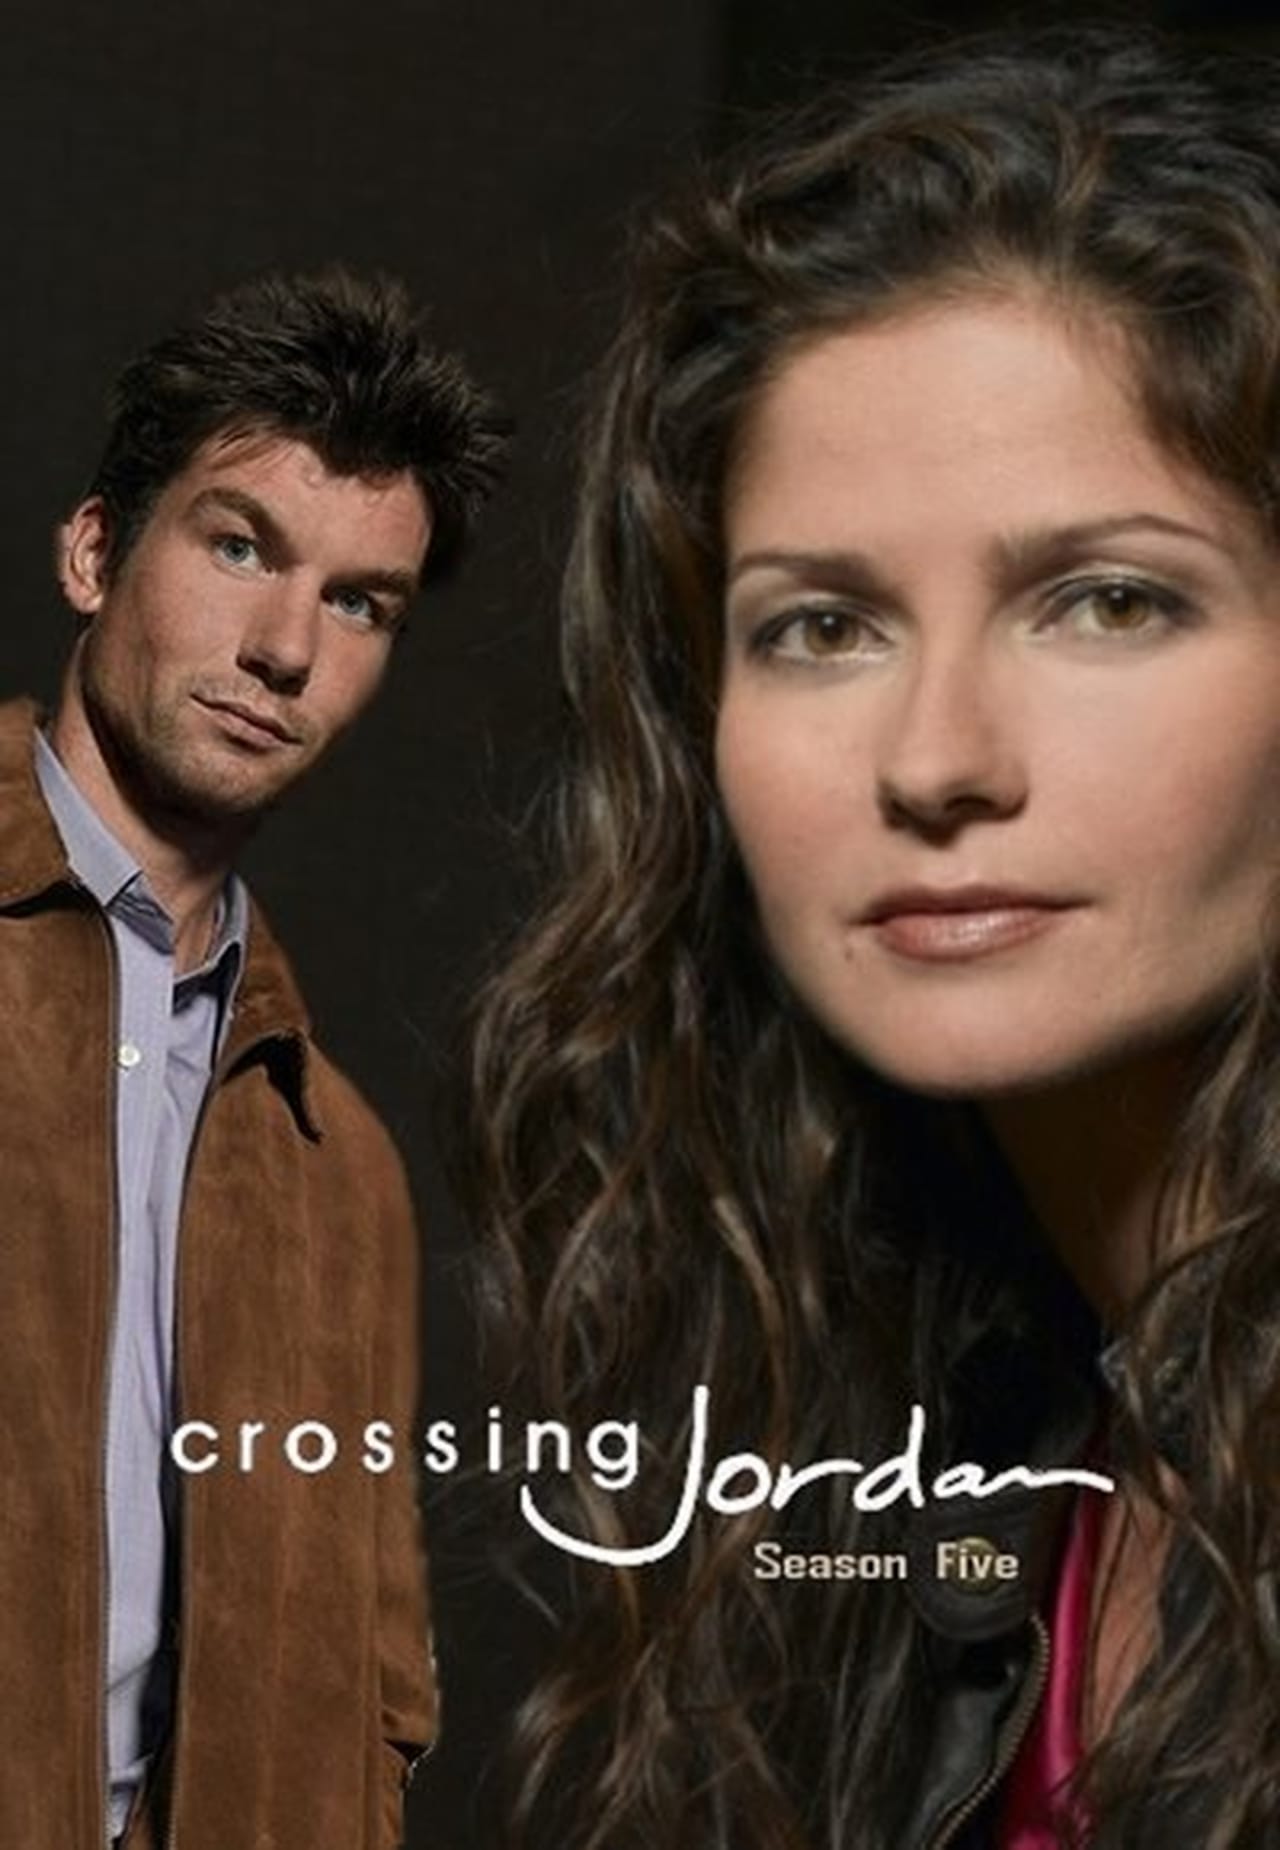 Crossing Jordan Season 5